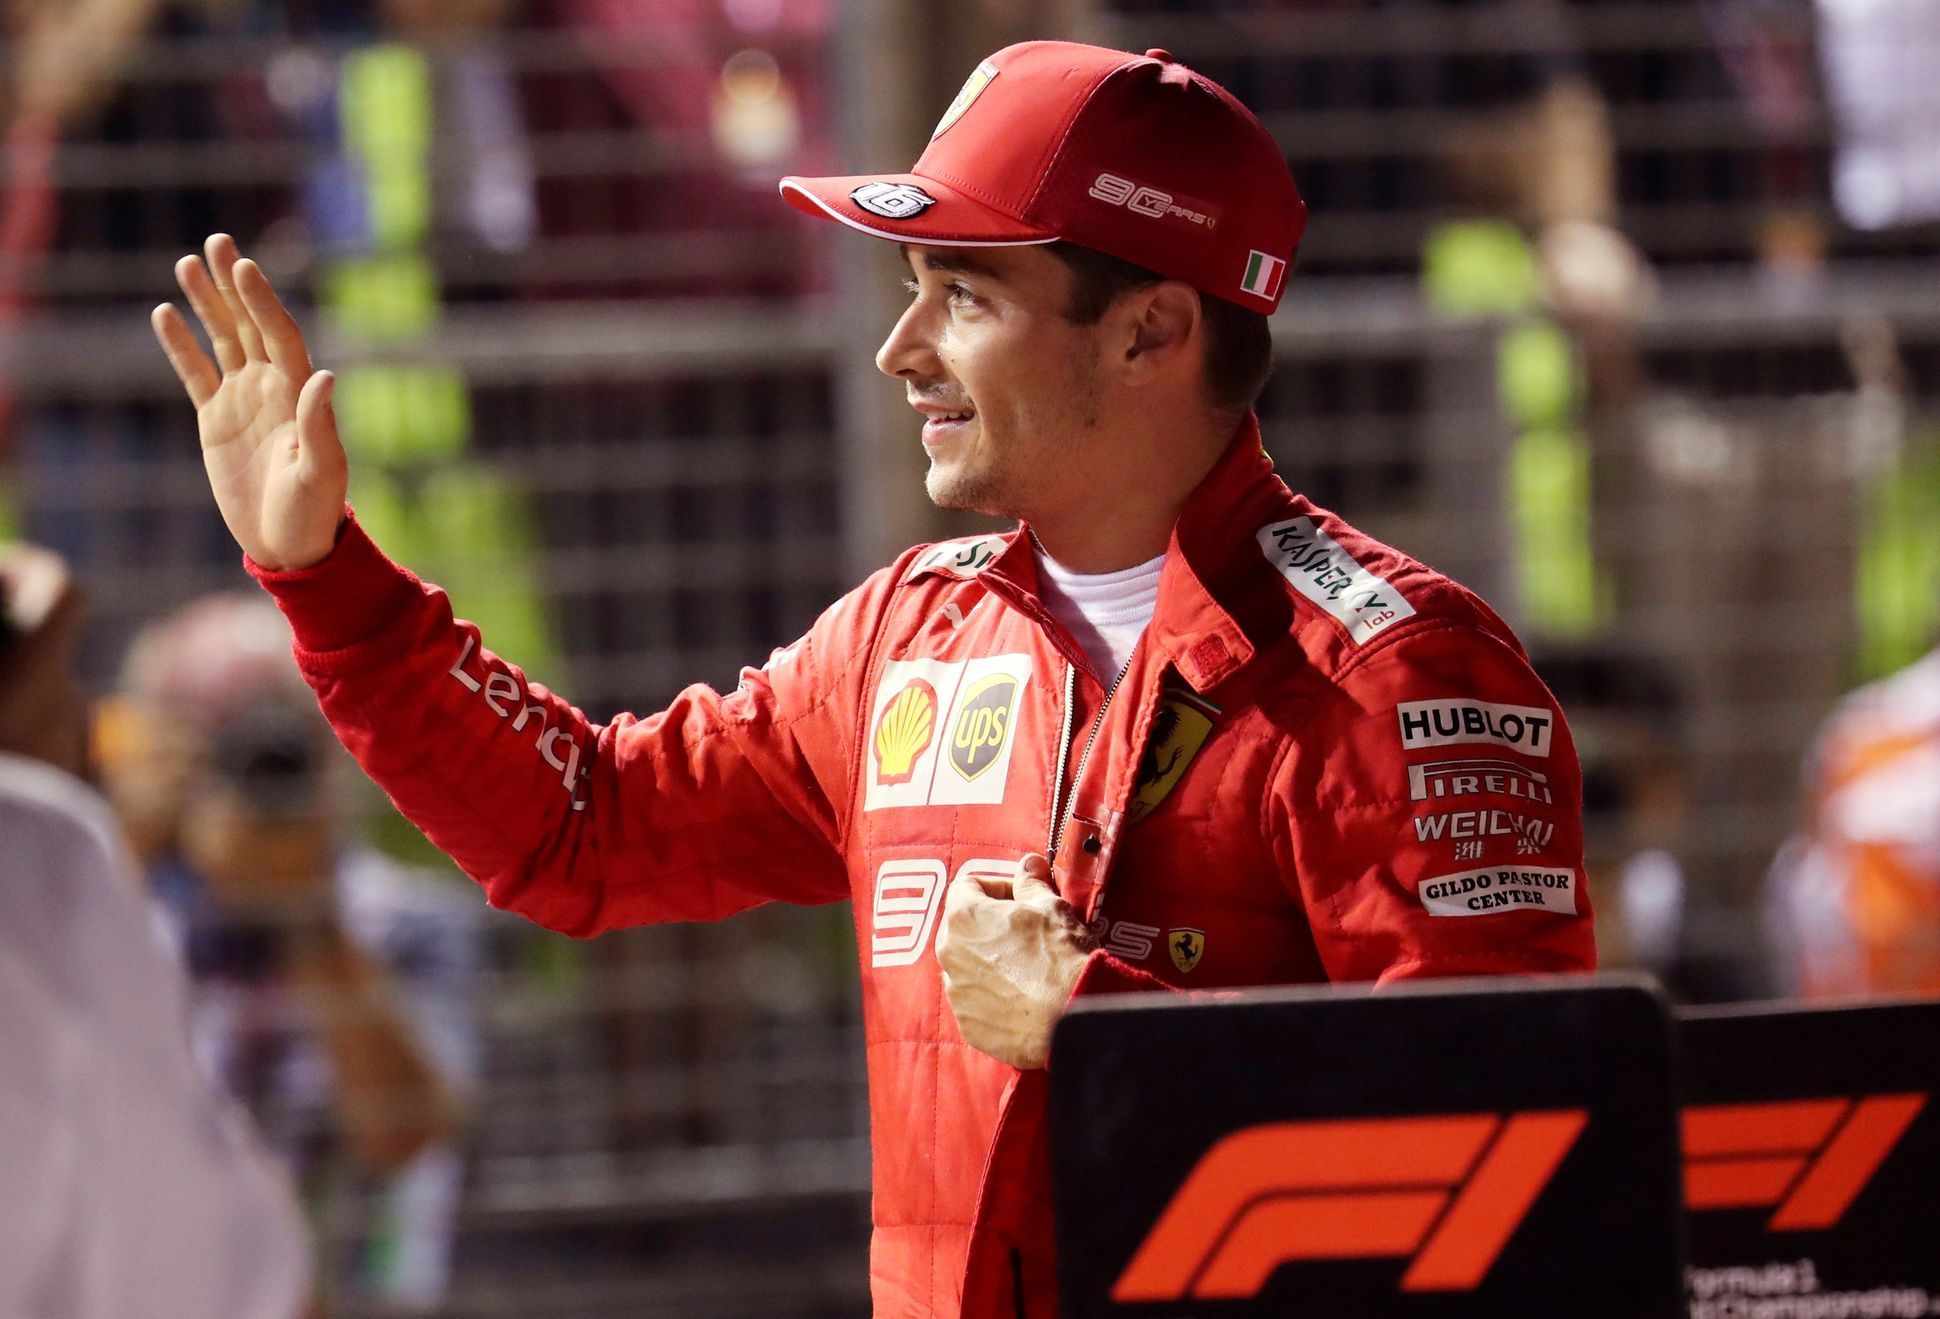 Pilot Ferrari Charles Leclerc slaví vítězství v kvalifikaci na GP Singapuru 2019 formule 1